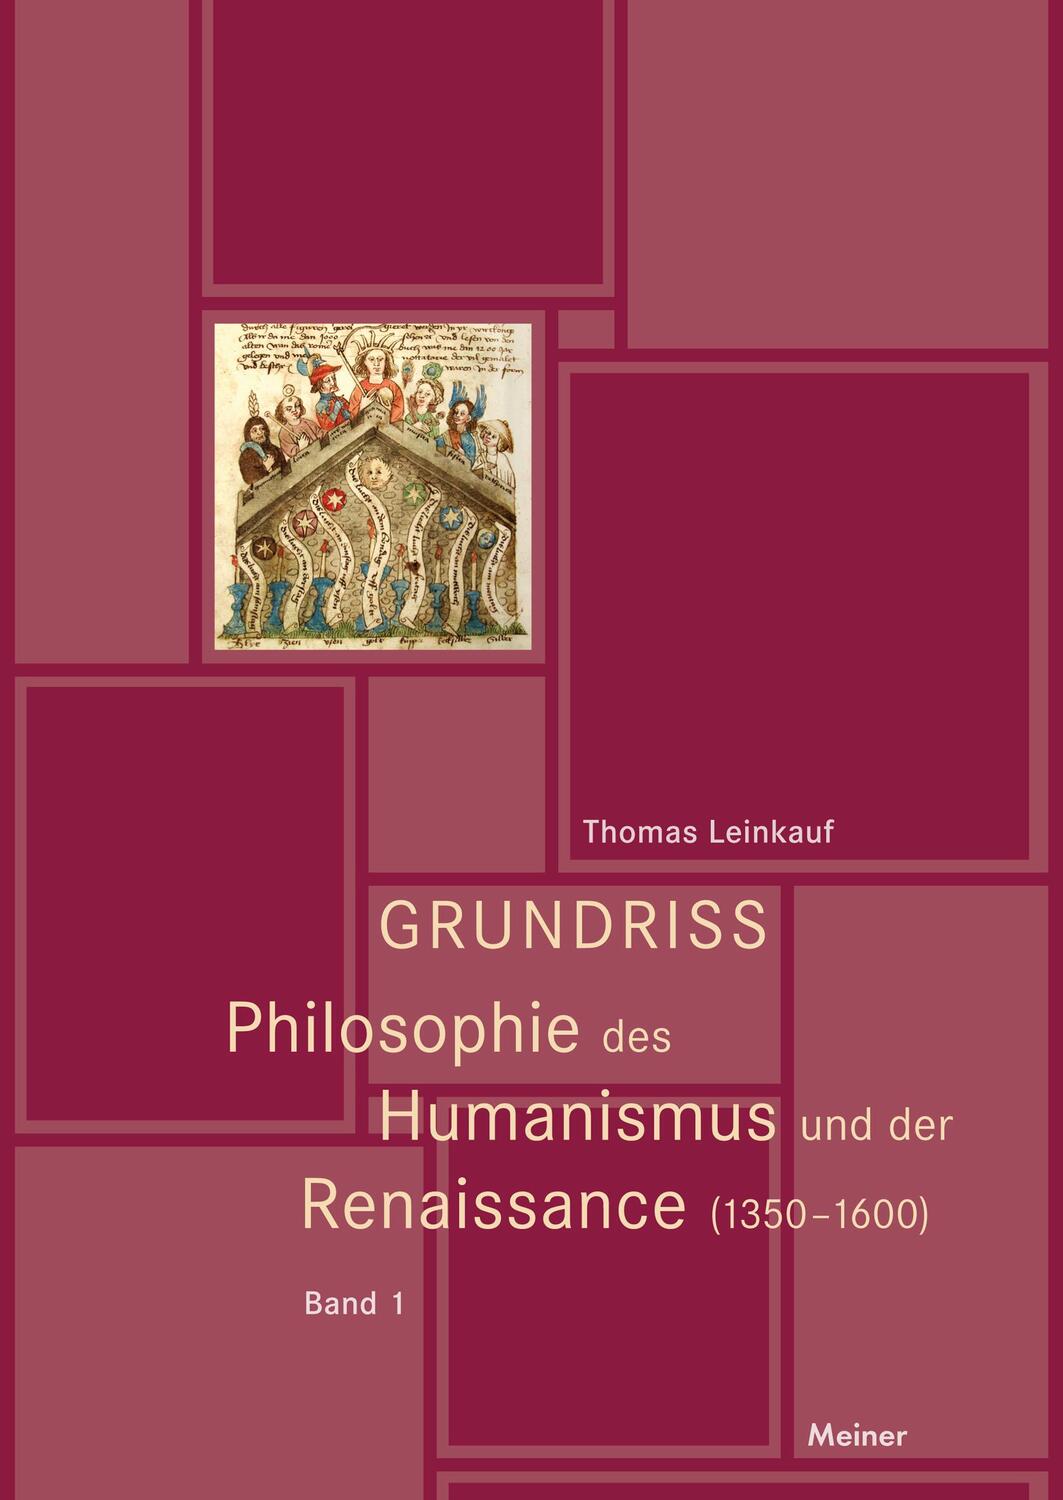 Grundriss Philosophie des Humanismus und der Renaissance - Leinkauf, Thomas